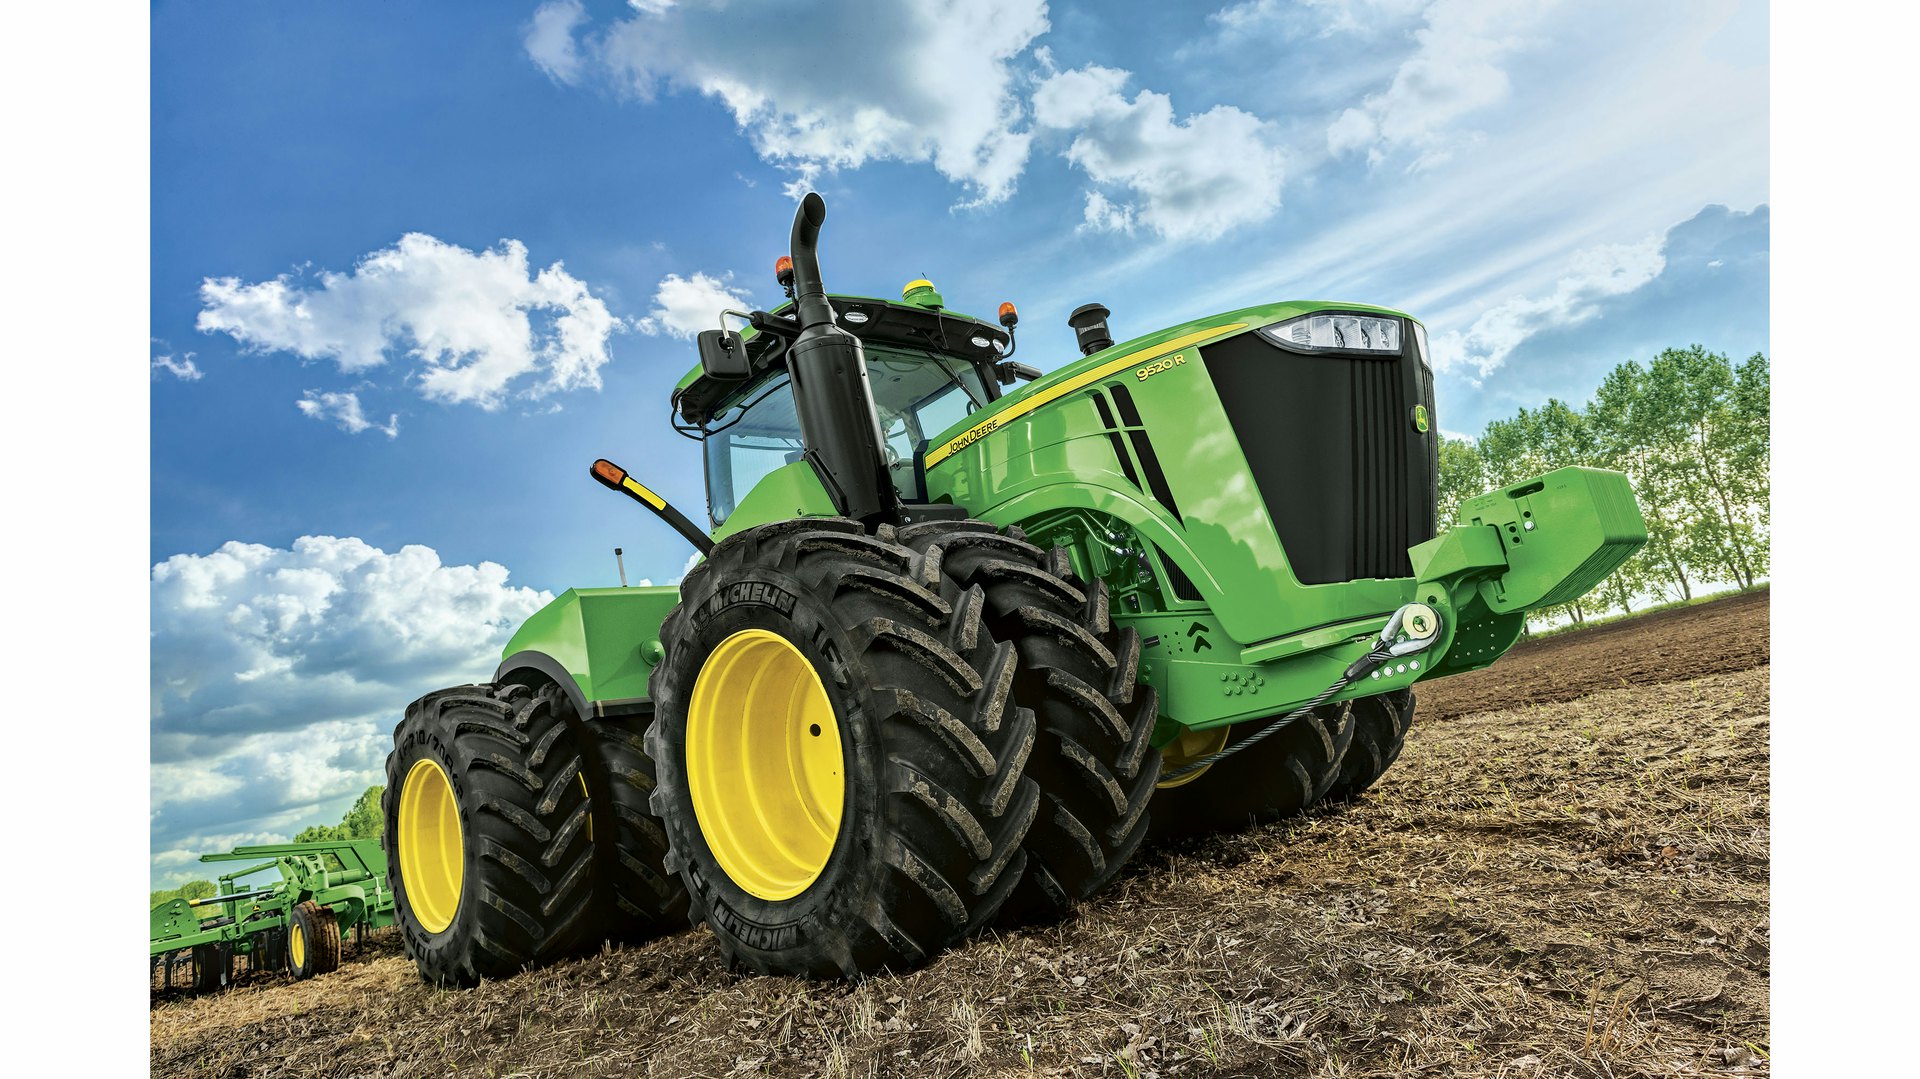 Top 4 New Features in the New John Deere 9 Series Tractors